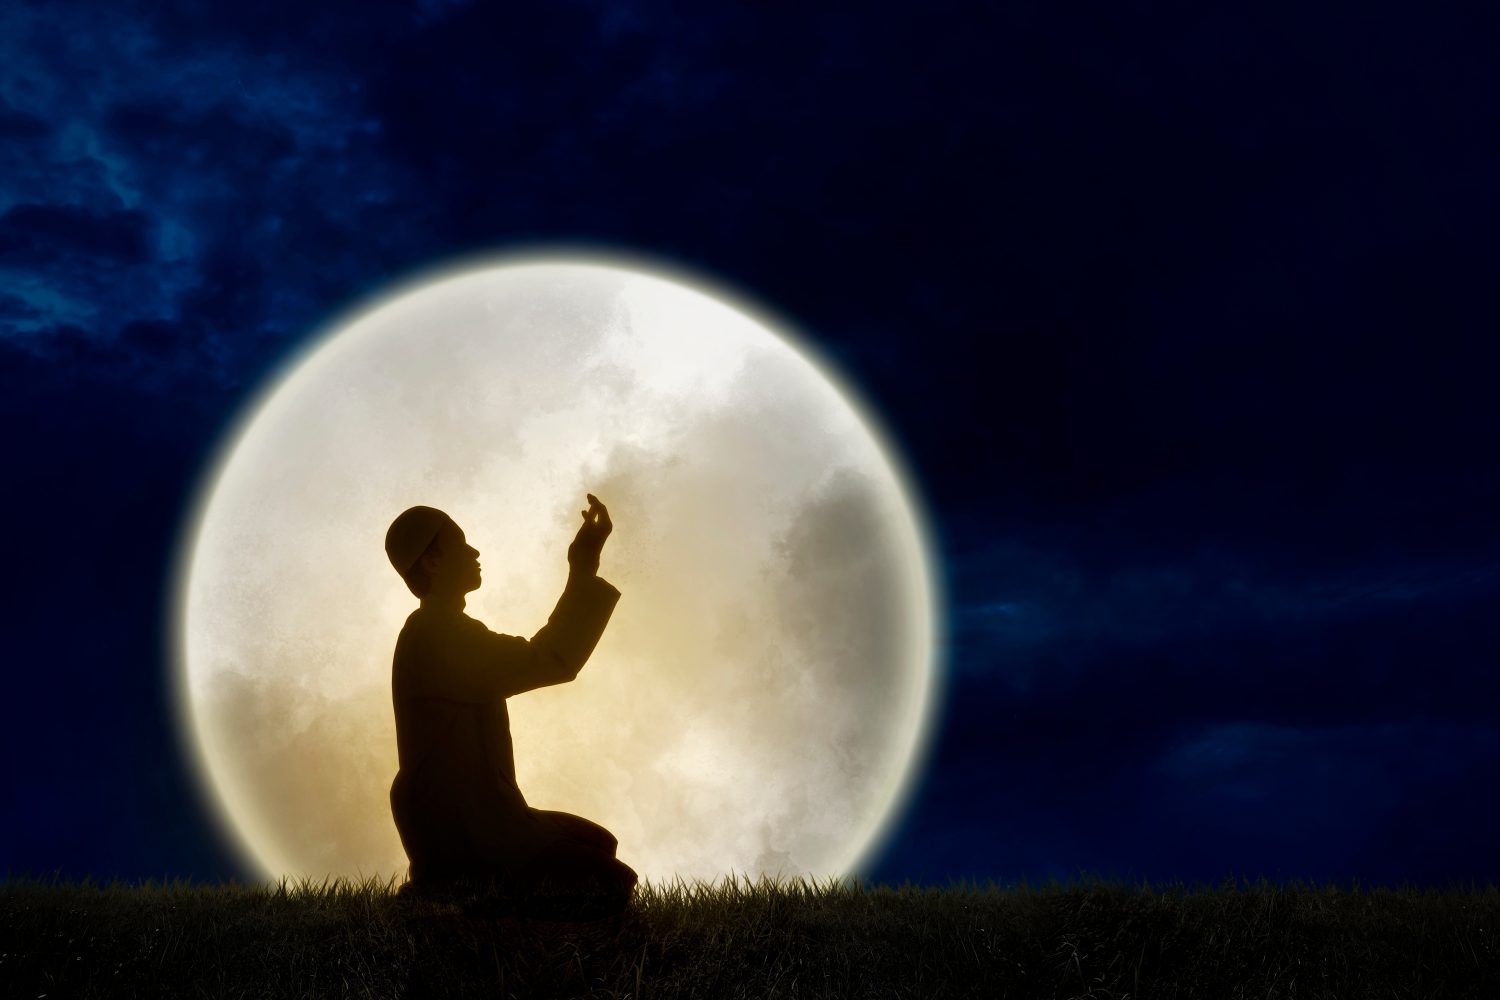 Immagine a doppia esposizione della silhouette di un uomo musulmano che prega con un enorme sfondo al chiaro di luna piena